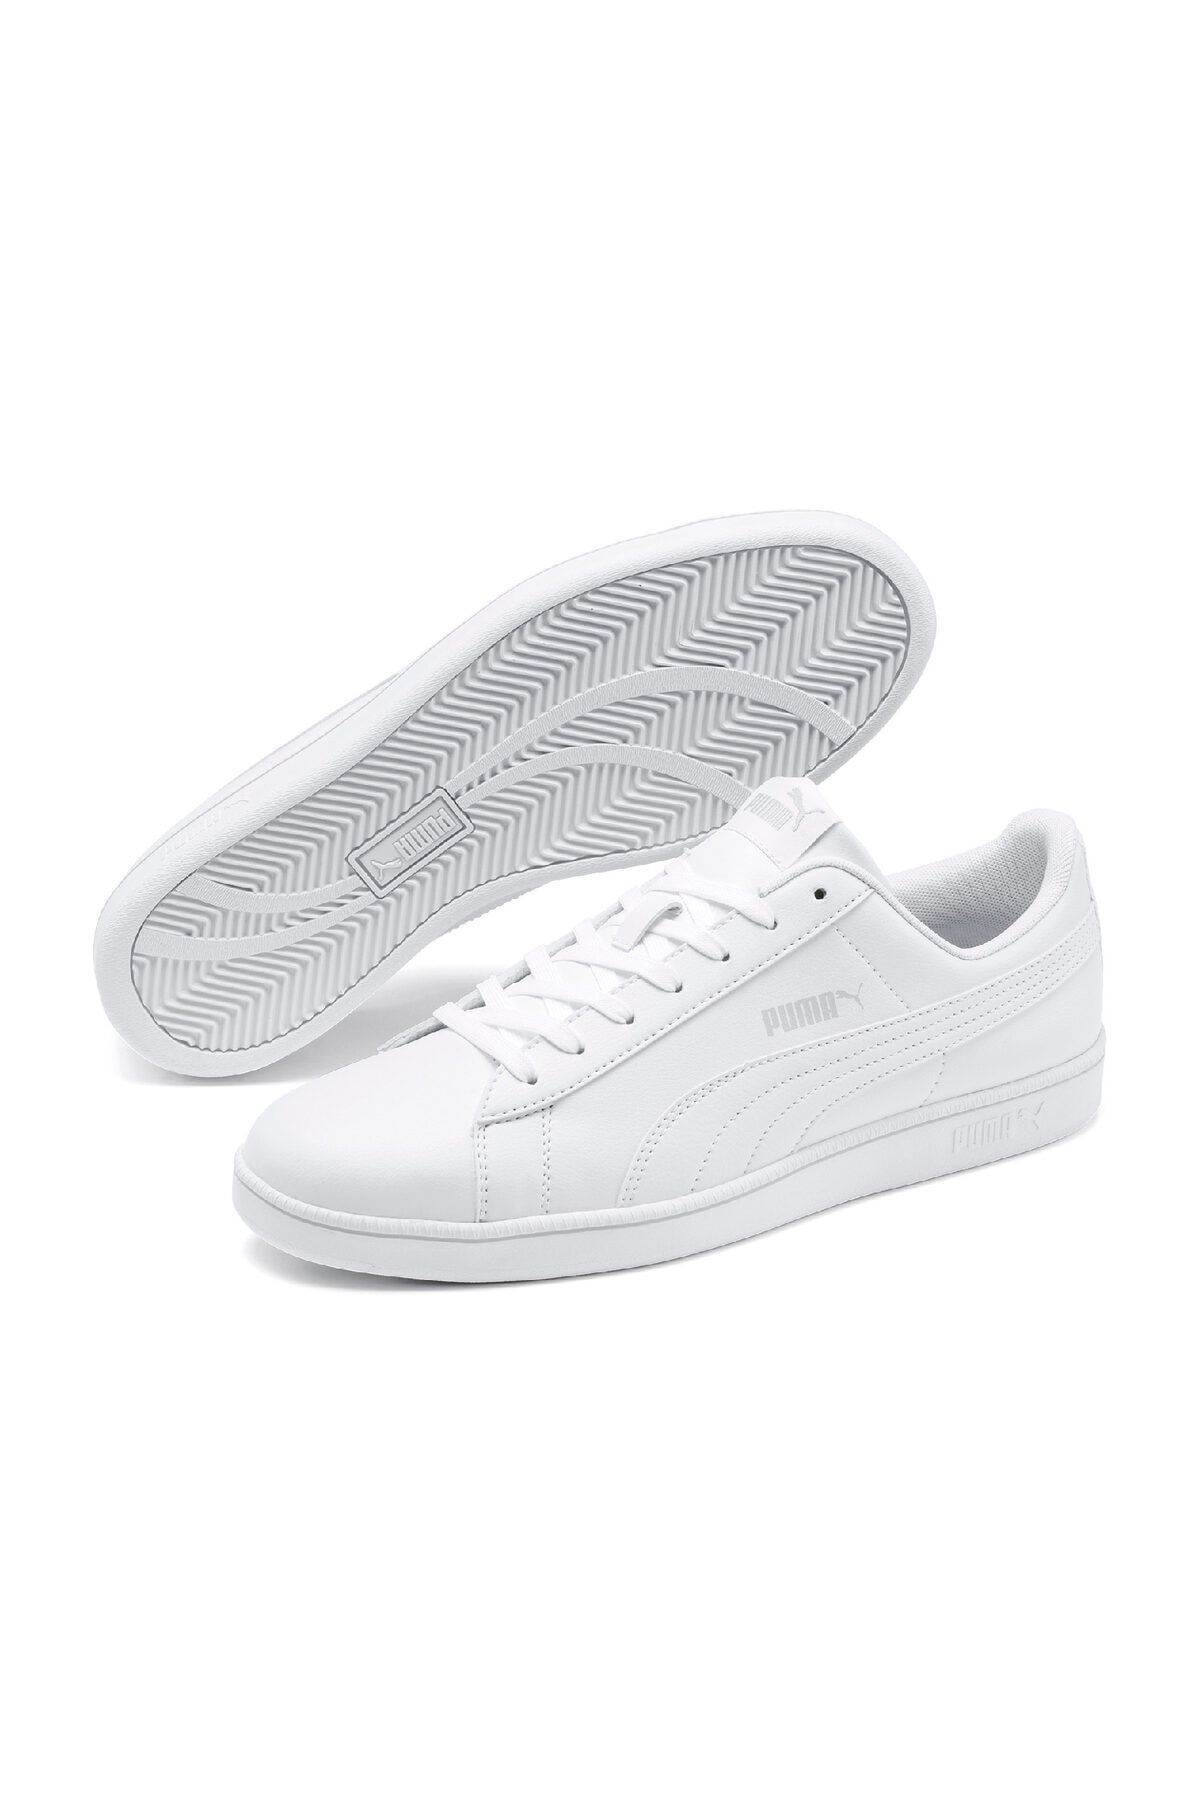 Puma BASELINE Beyaz Erkek Sneaker Ayakkabı 100532352